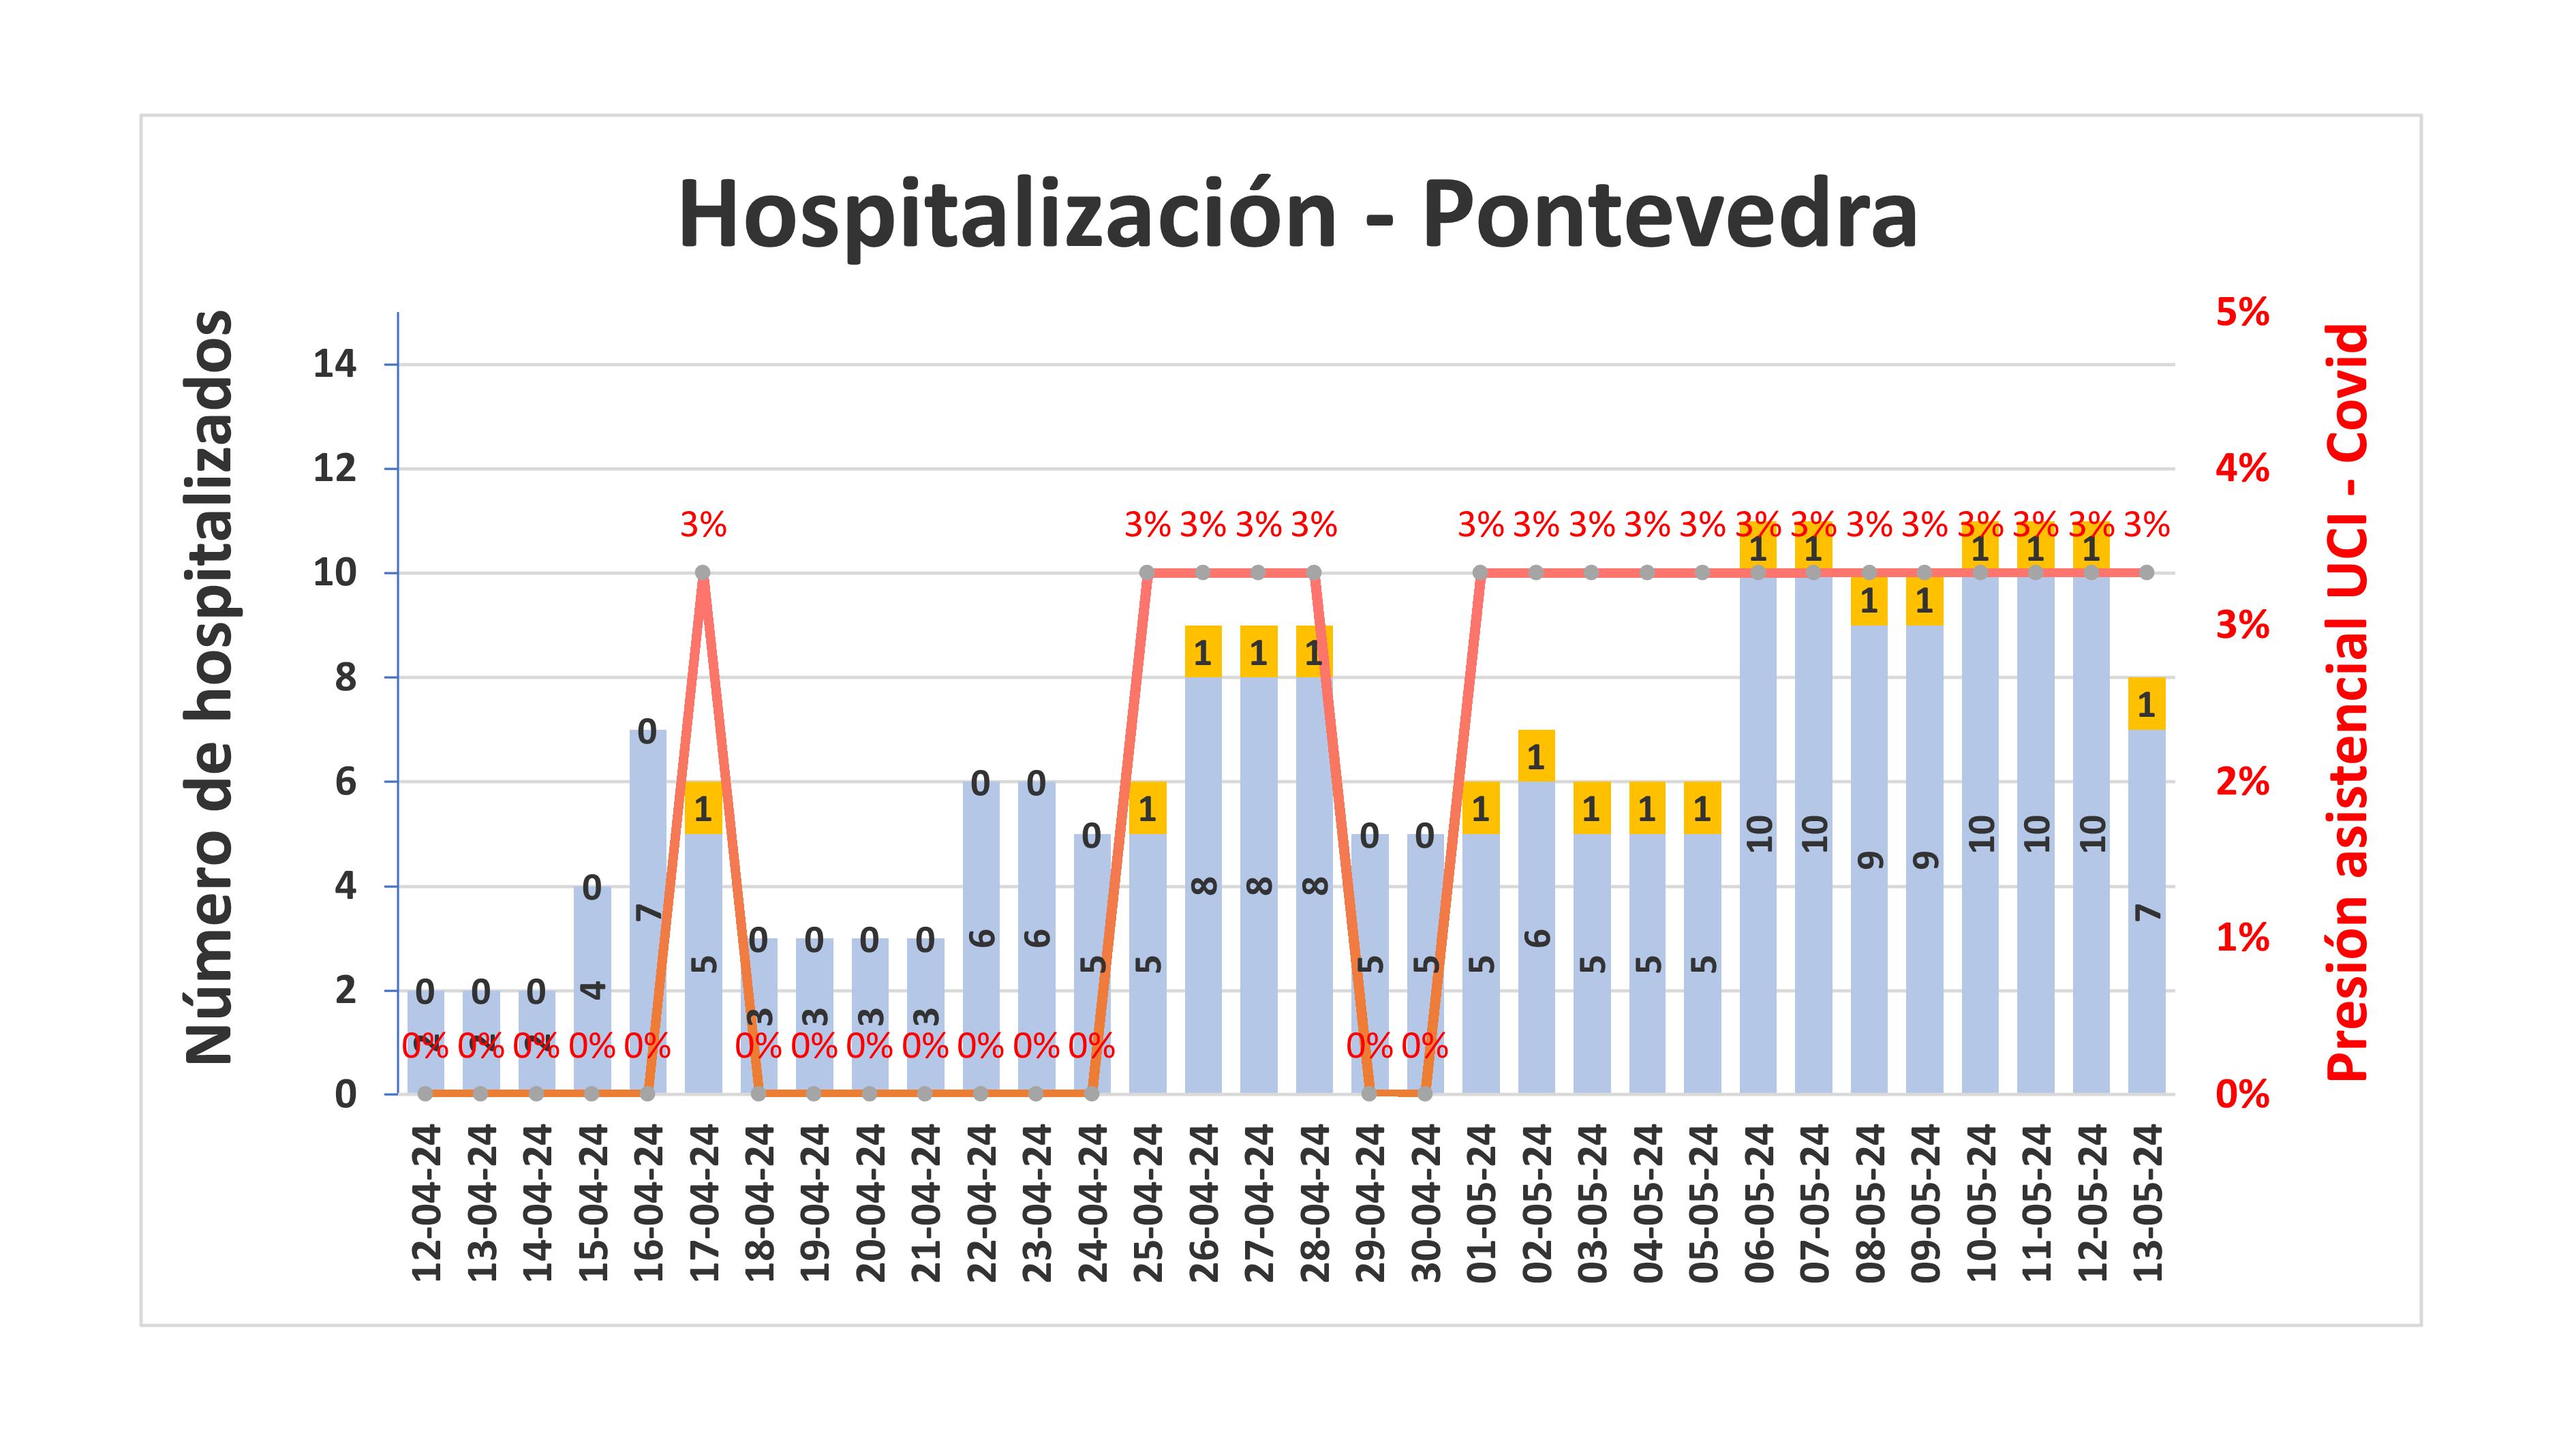 Hospitalización na área de Pontevedra